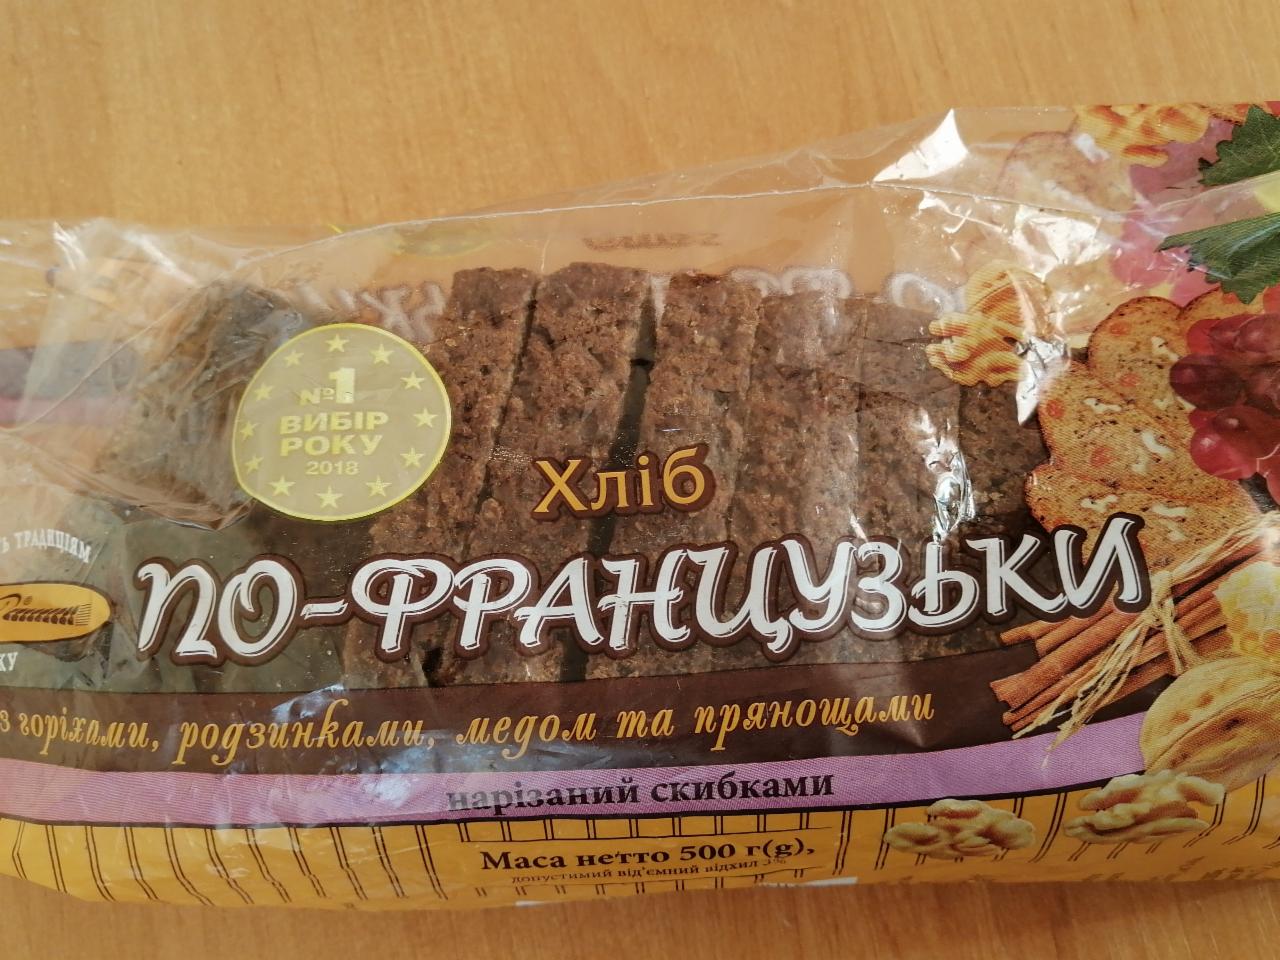 Фото - Хліб по-французький нарізаний скибками Київхліб